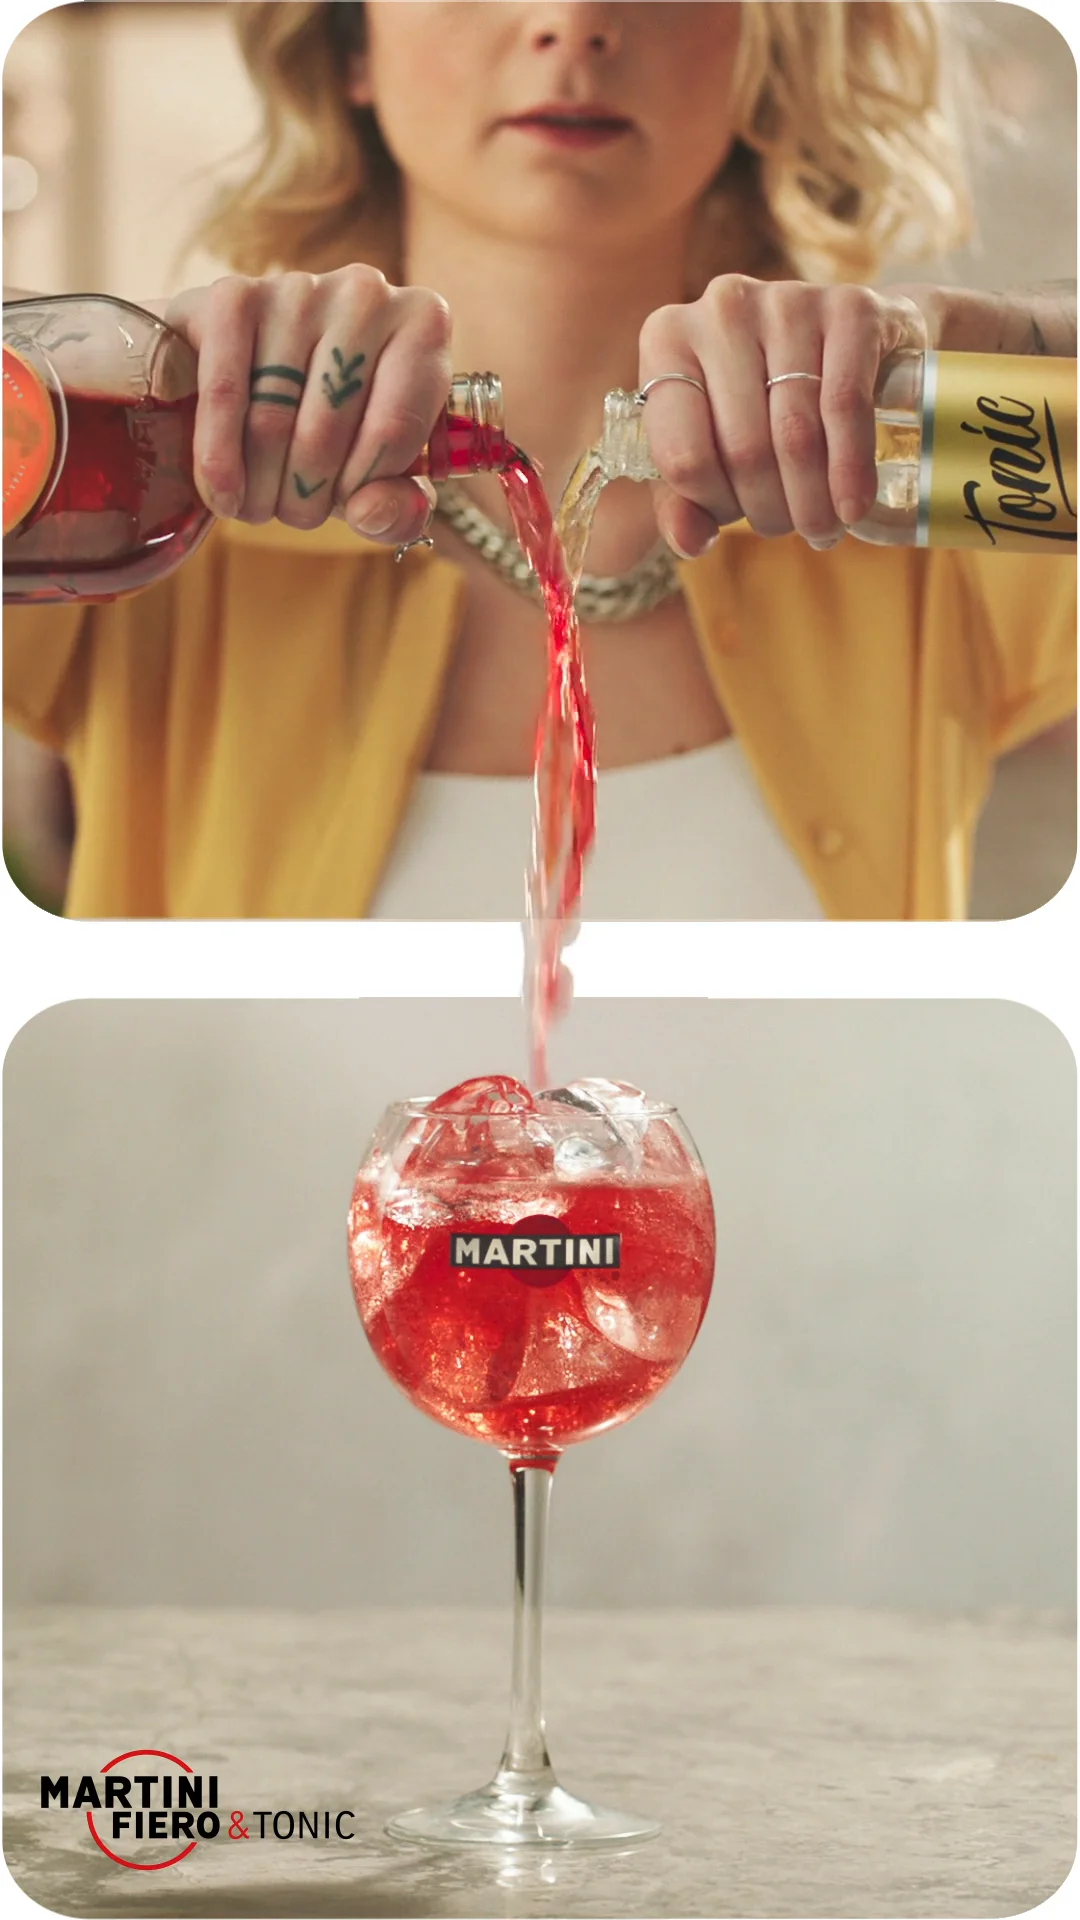 Martini Fiero \'Pour\' - Pinterest on Vimeo